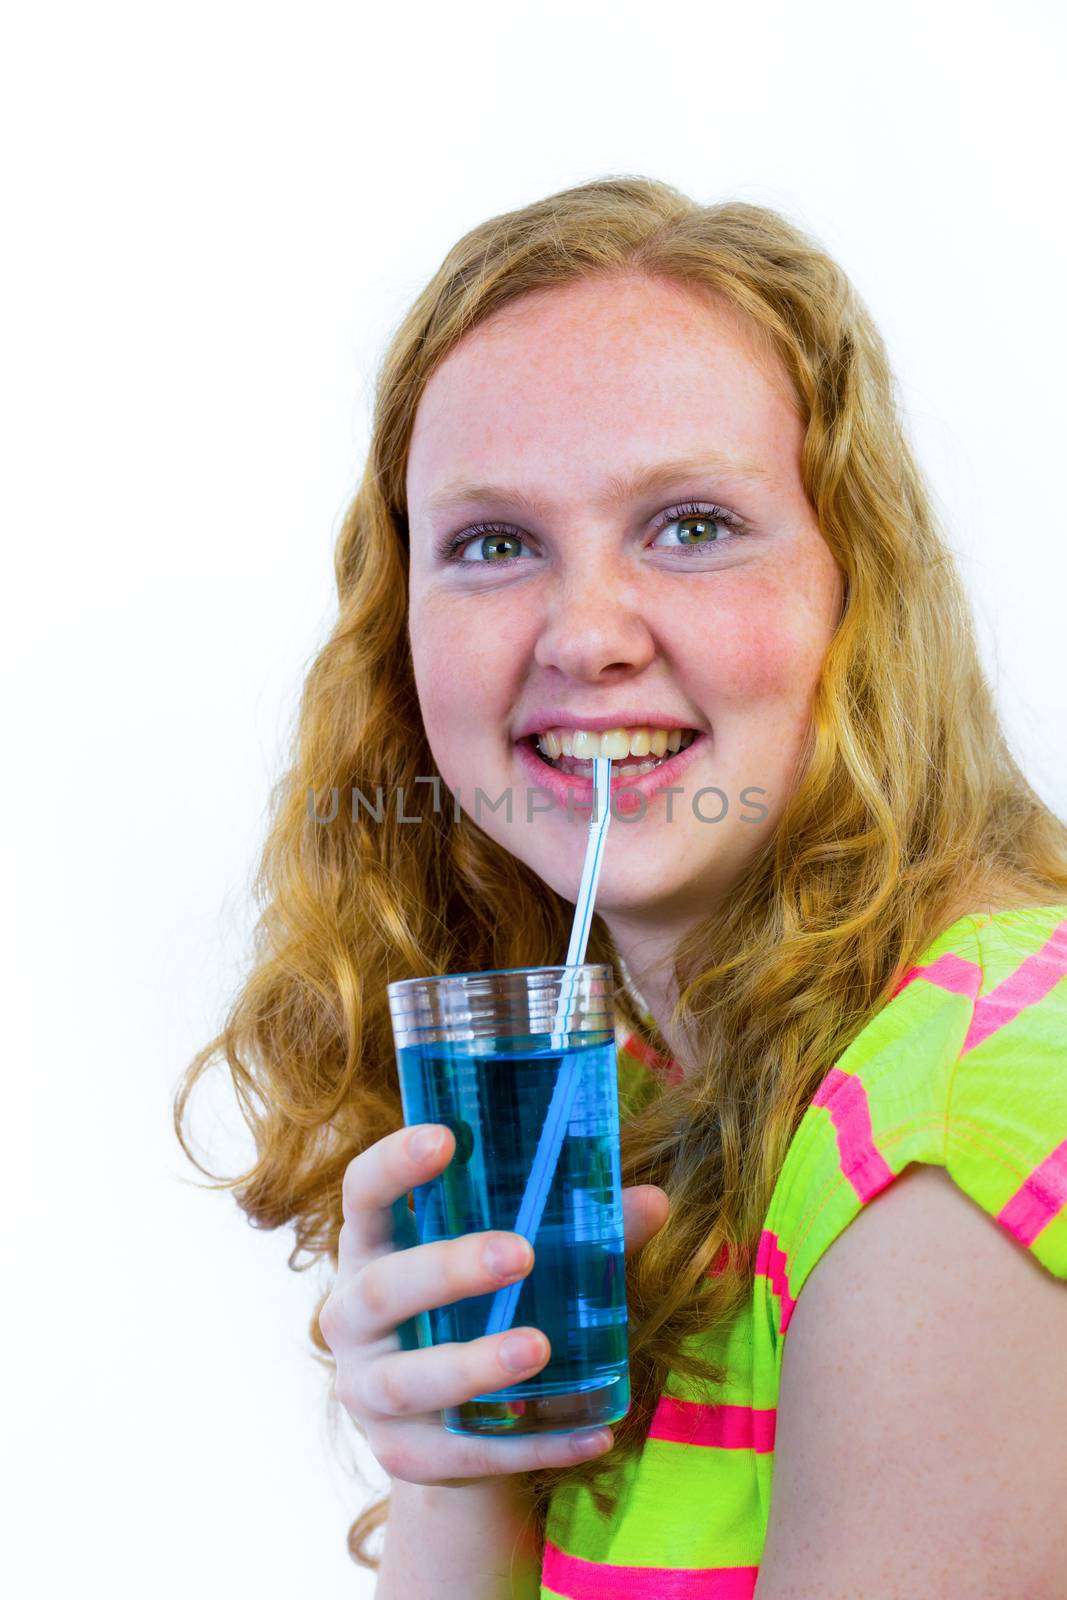 Dutch teenage girl drinks blue soft drink by BenSchonewille